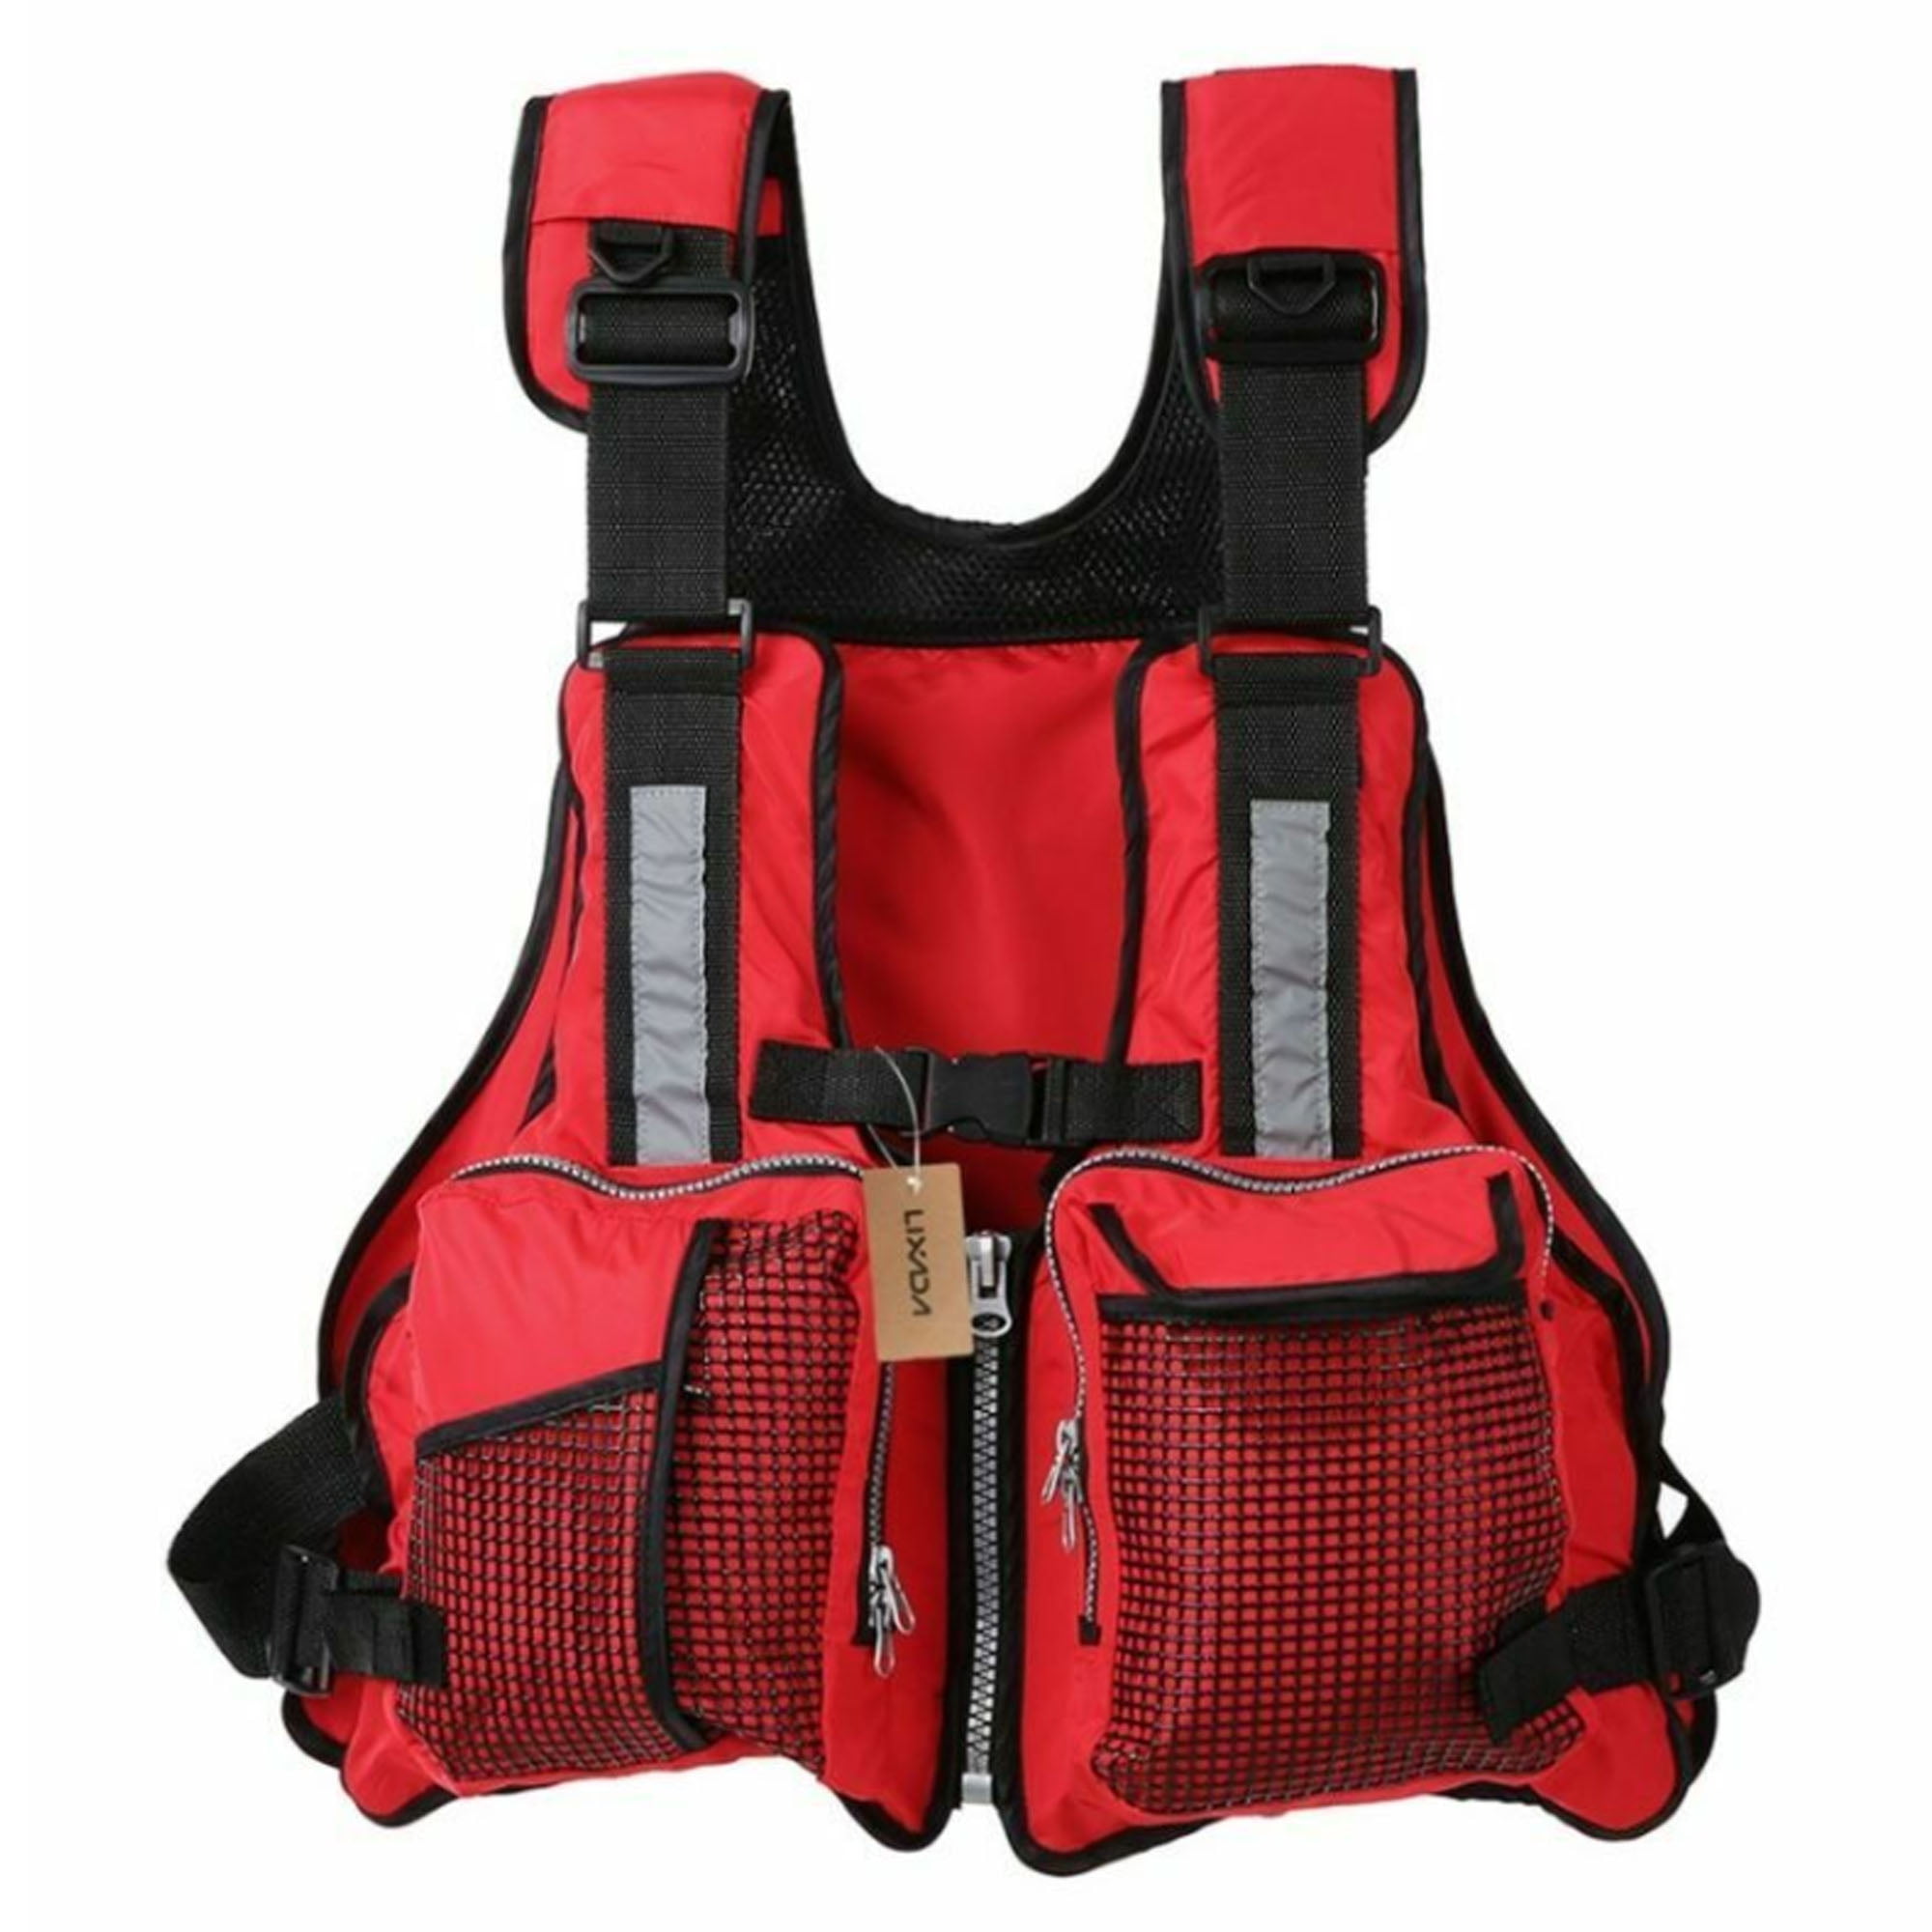 Adult Adjustable Buoyancy Aid Sailing Kayak Canoeing Fishing Life Jacket Vest 